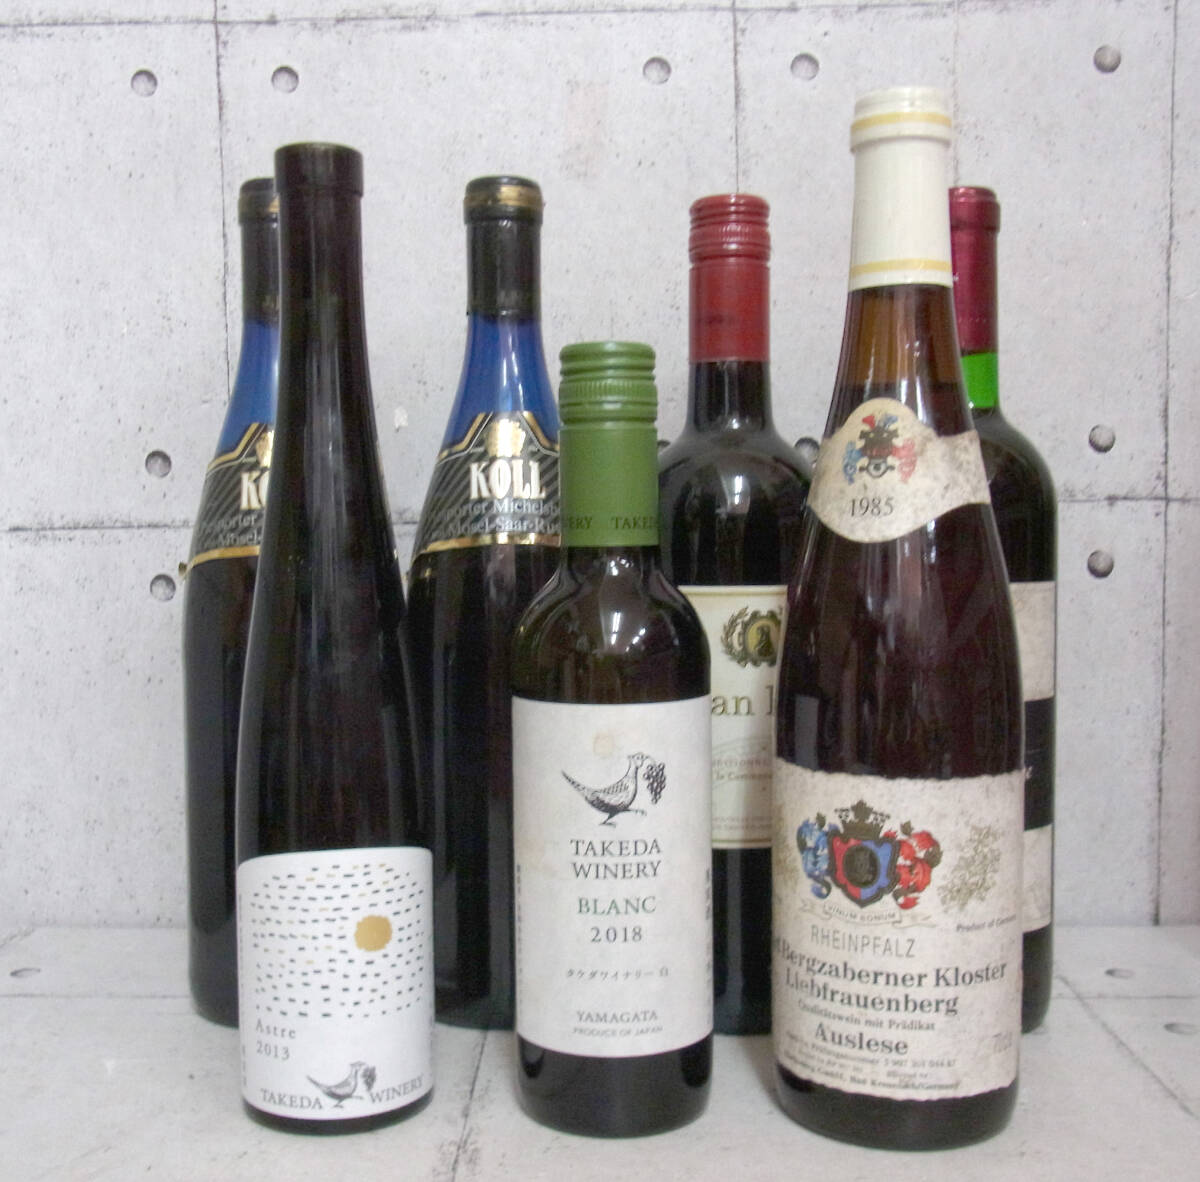 ワインまとめて7本 ドイツワイン 日本ワイン 白ワイン 赤ワイン モーゼル・ザール・ルーヴァー ラインファルツ ジャン・リヴァル の画像1